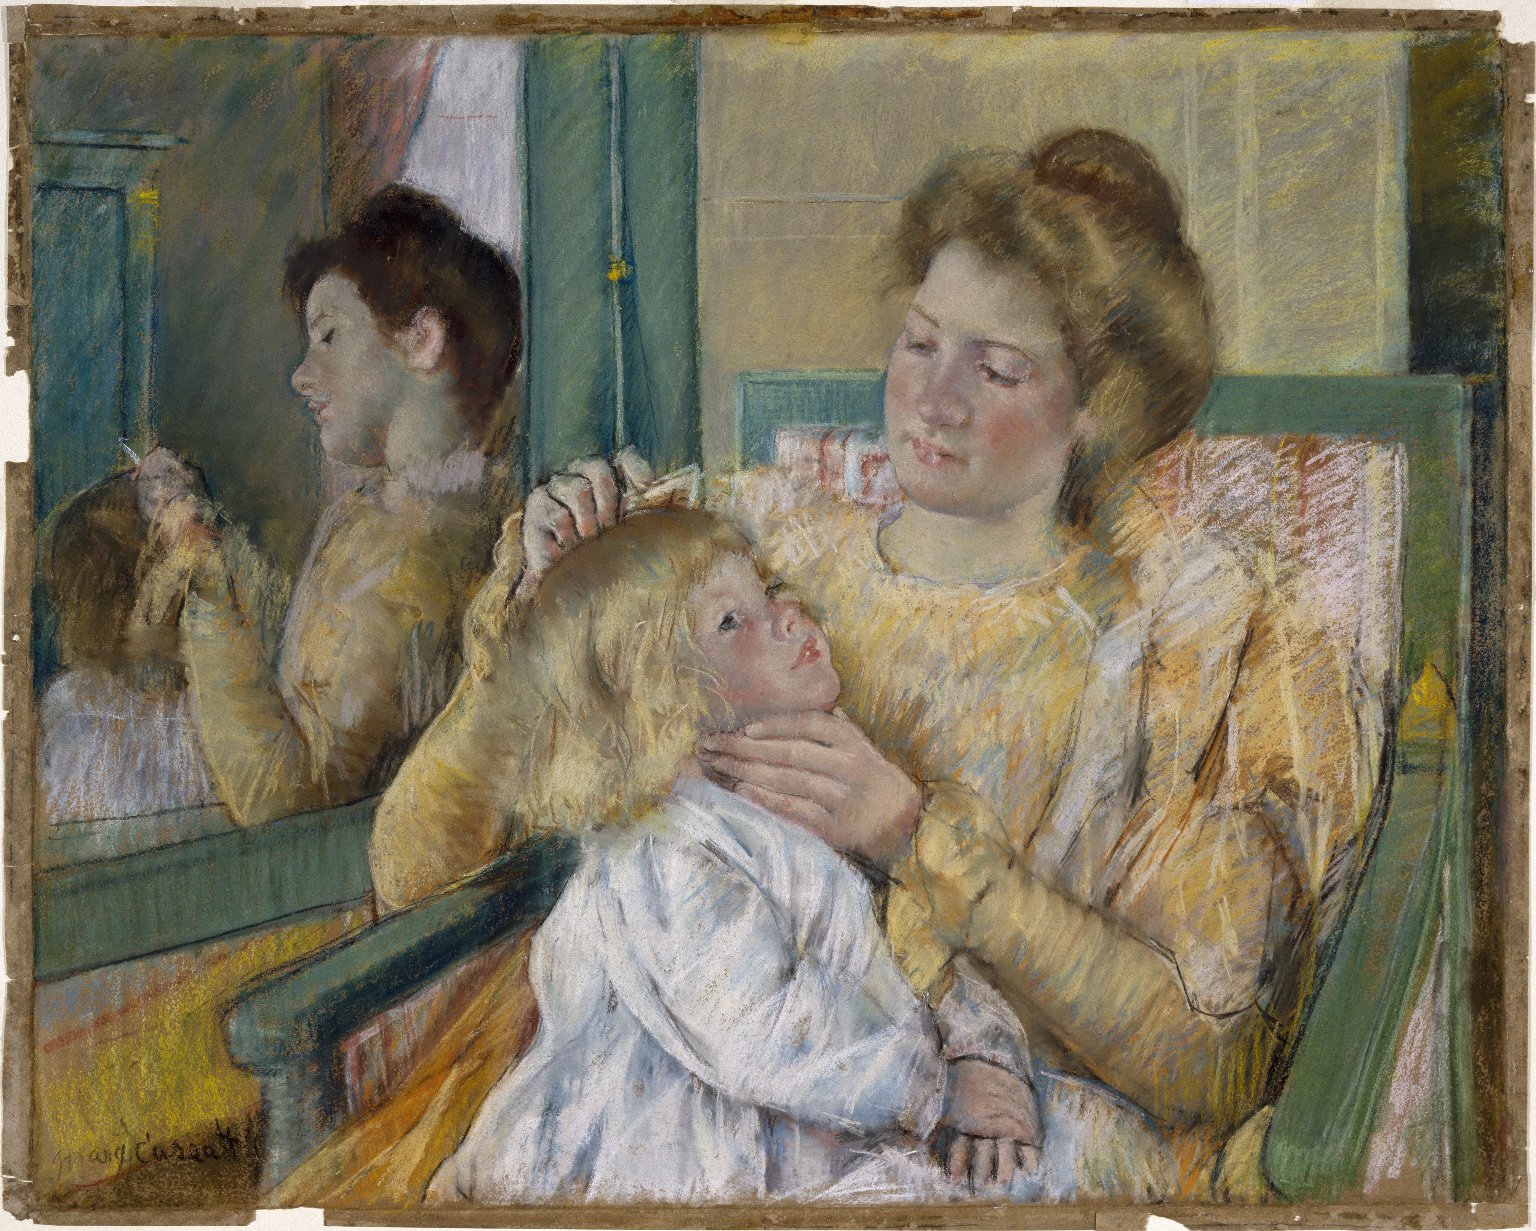 母親給孩子梳頭 by Mary Cassatt - 1901 - 64.1 x 80.3 cm 